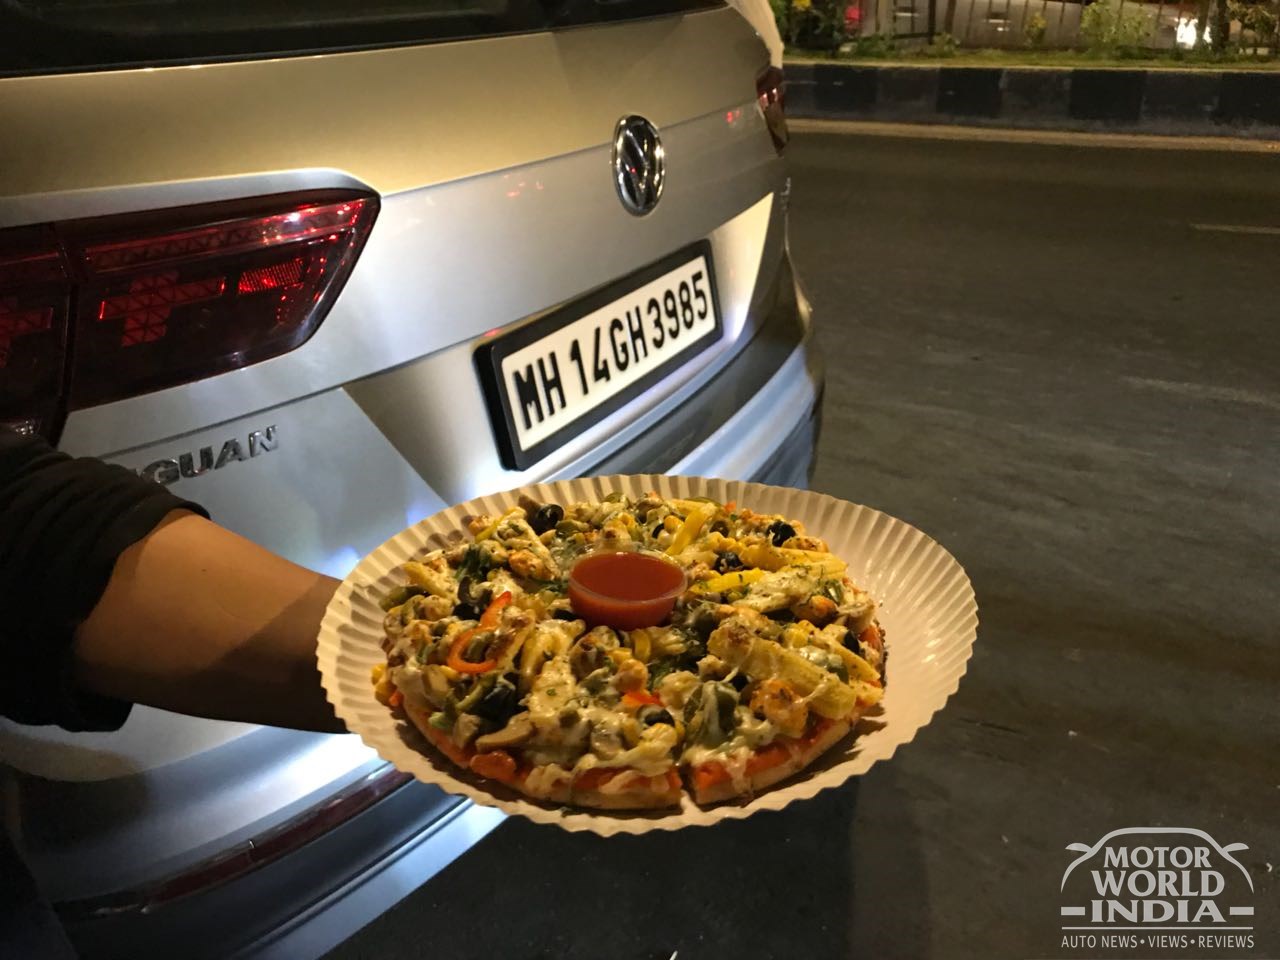 Volkswagen Midnight Food Trail